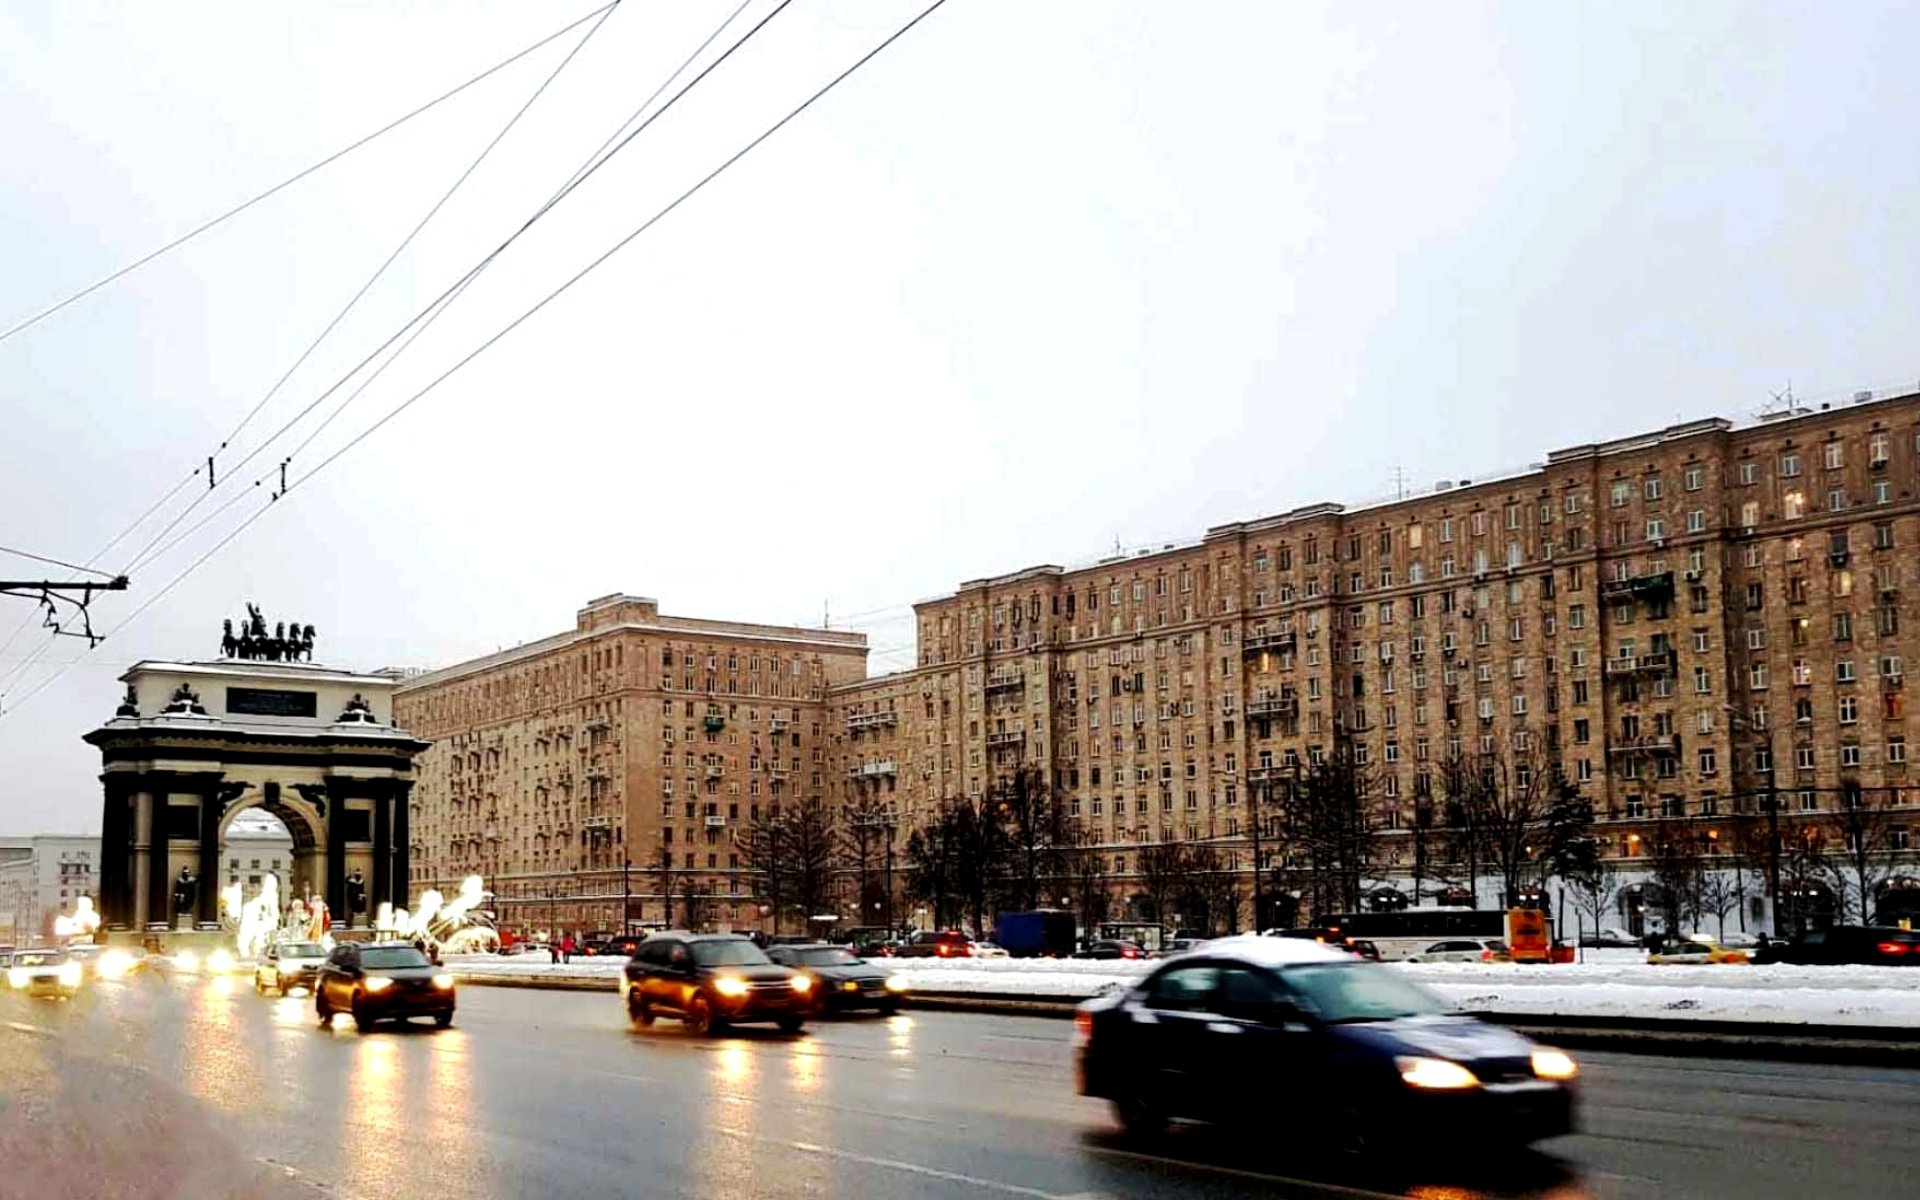 Улица кутузовский проспект москва